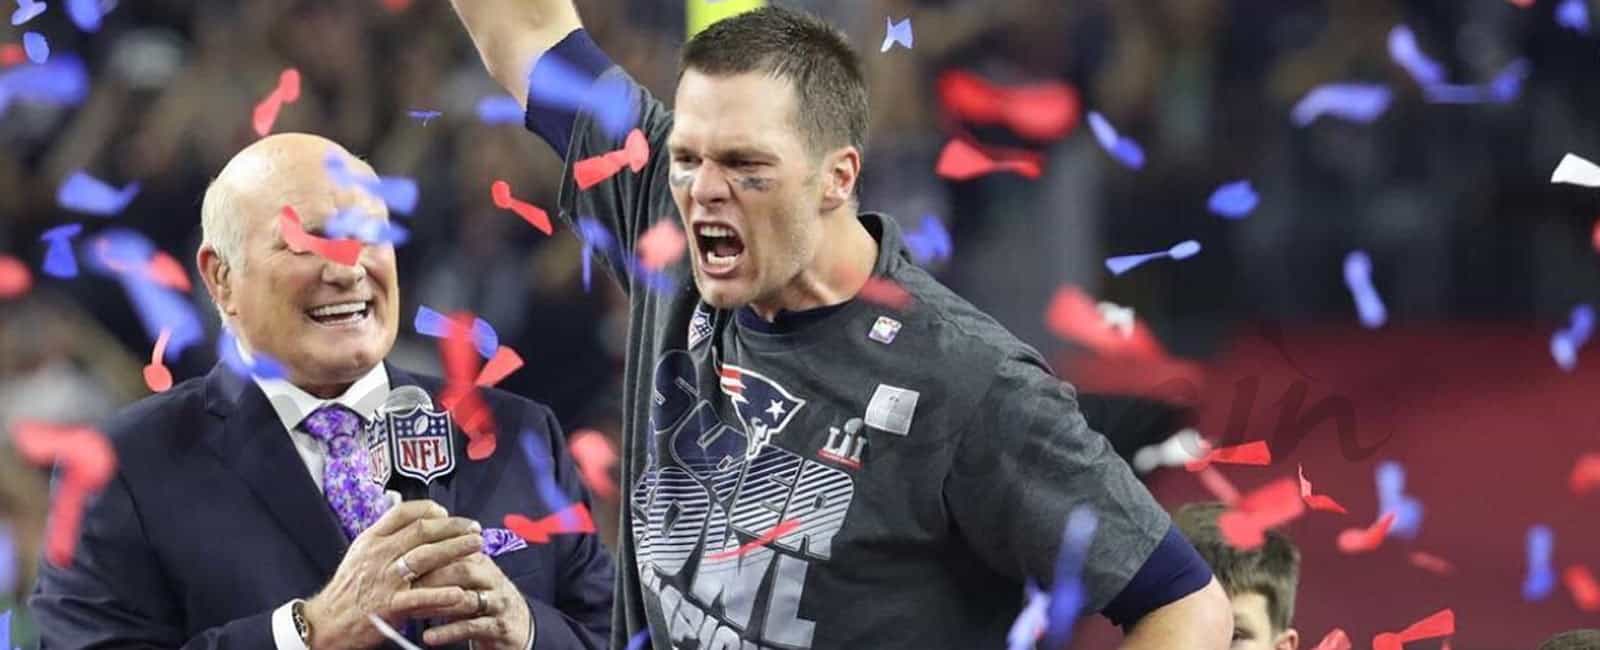 Tom Brady comparte su victoria en la Super Bowl con su familia